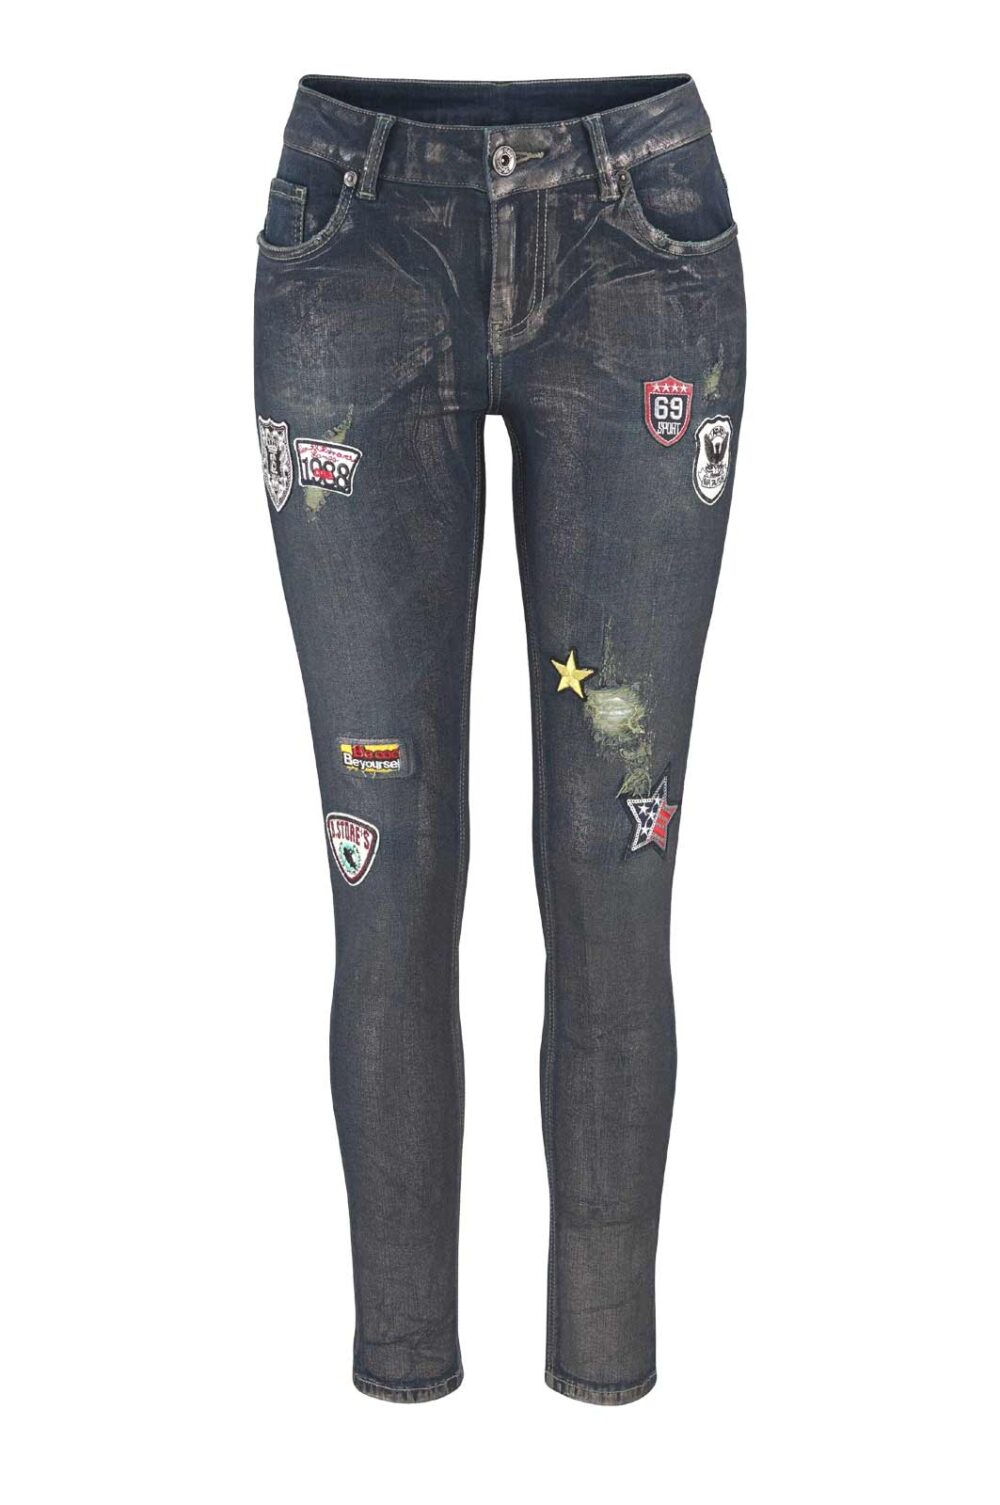 Blue Monkey Damen Jeans Hose mit Stretch Skinny Gold Metallic Länge 34 Missforty Online kaufen